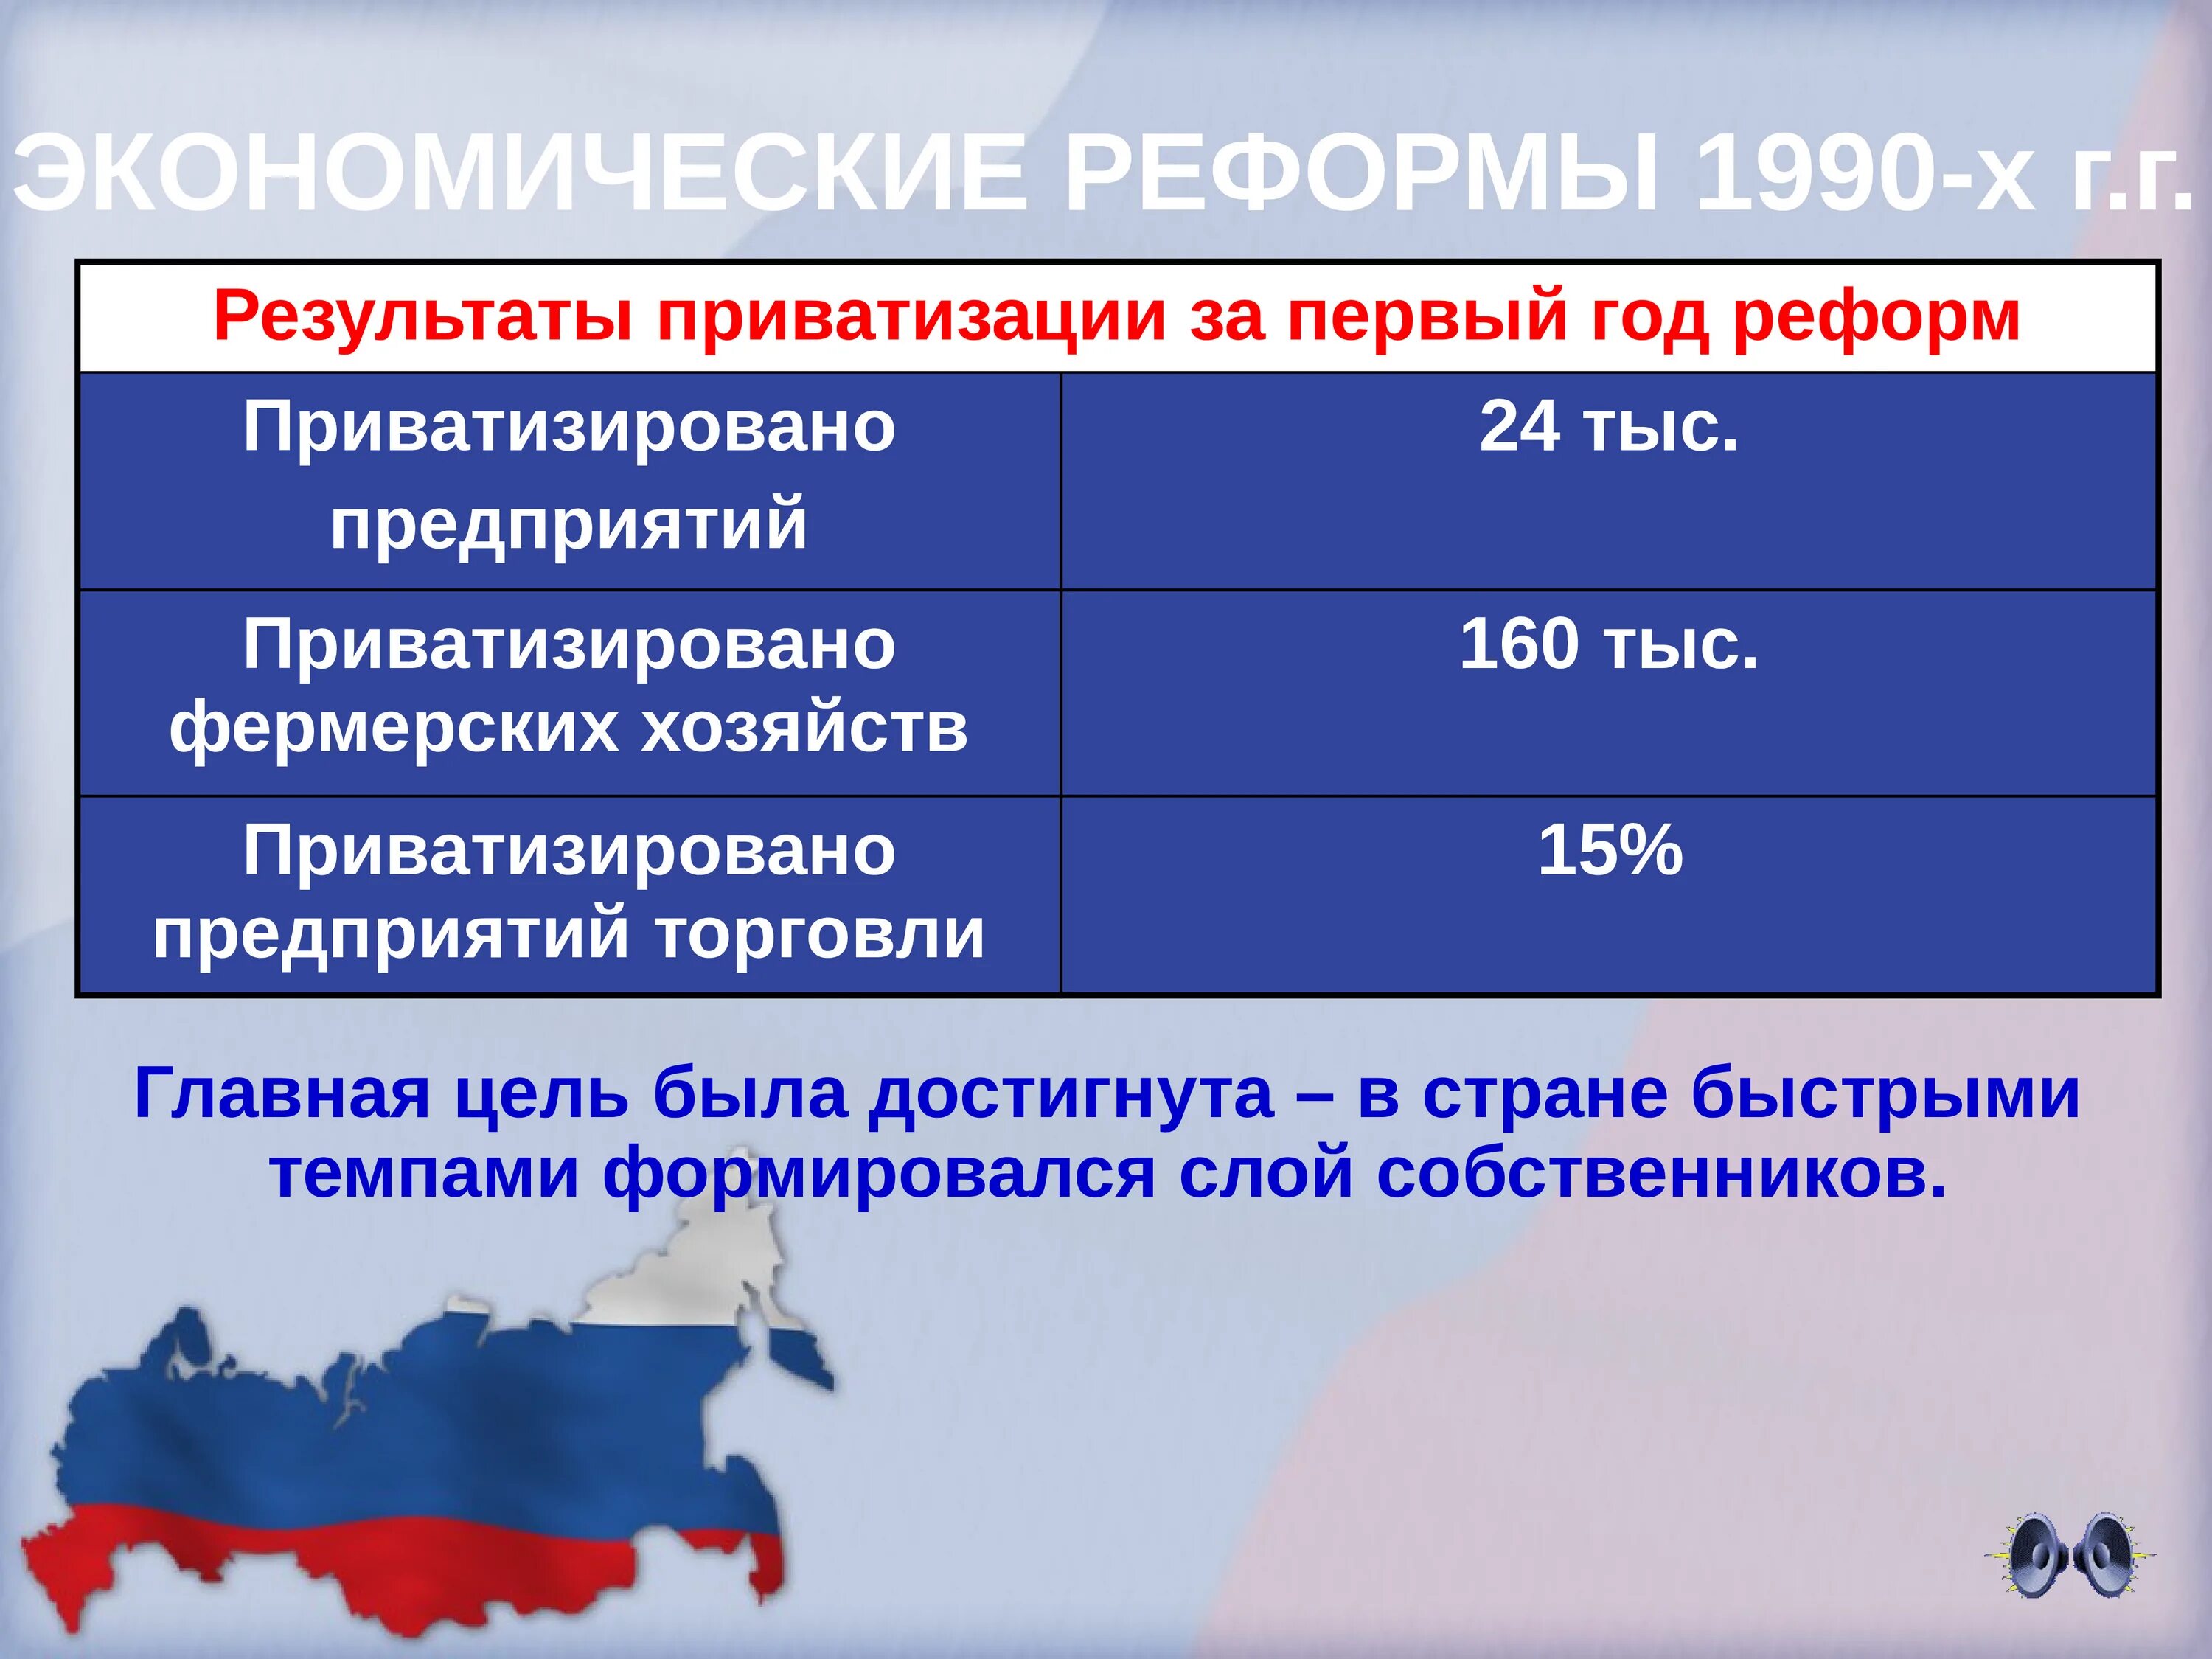 Экономические реформы 1990-х гг.. Экономические преобразования 1990-х годов.. Результаты экономических реформ 1990-х годов в России. Экономическая реформа в России в 1990-х.